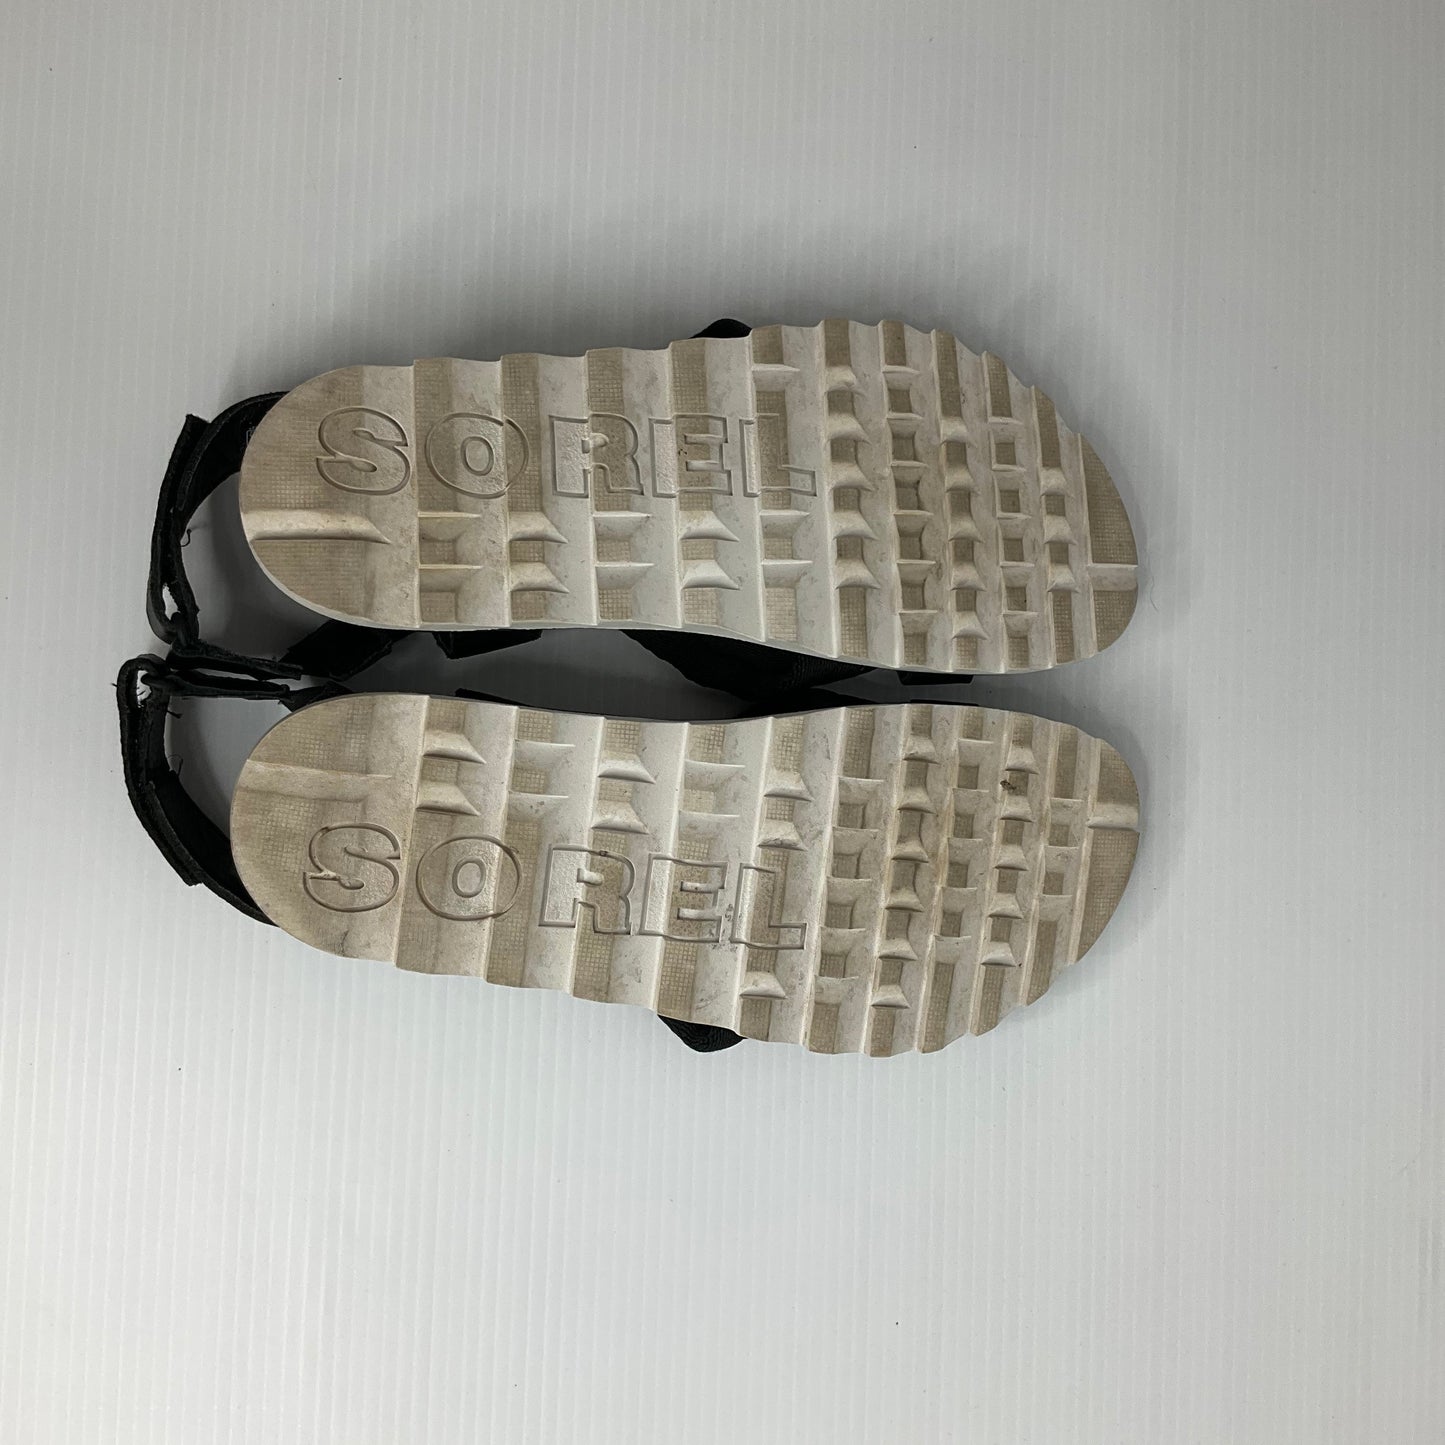 Black Sandals Flats Sorel, Size 7